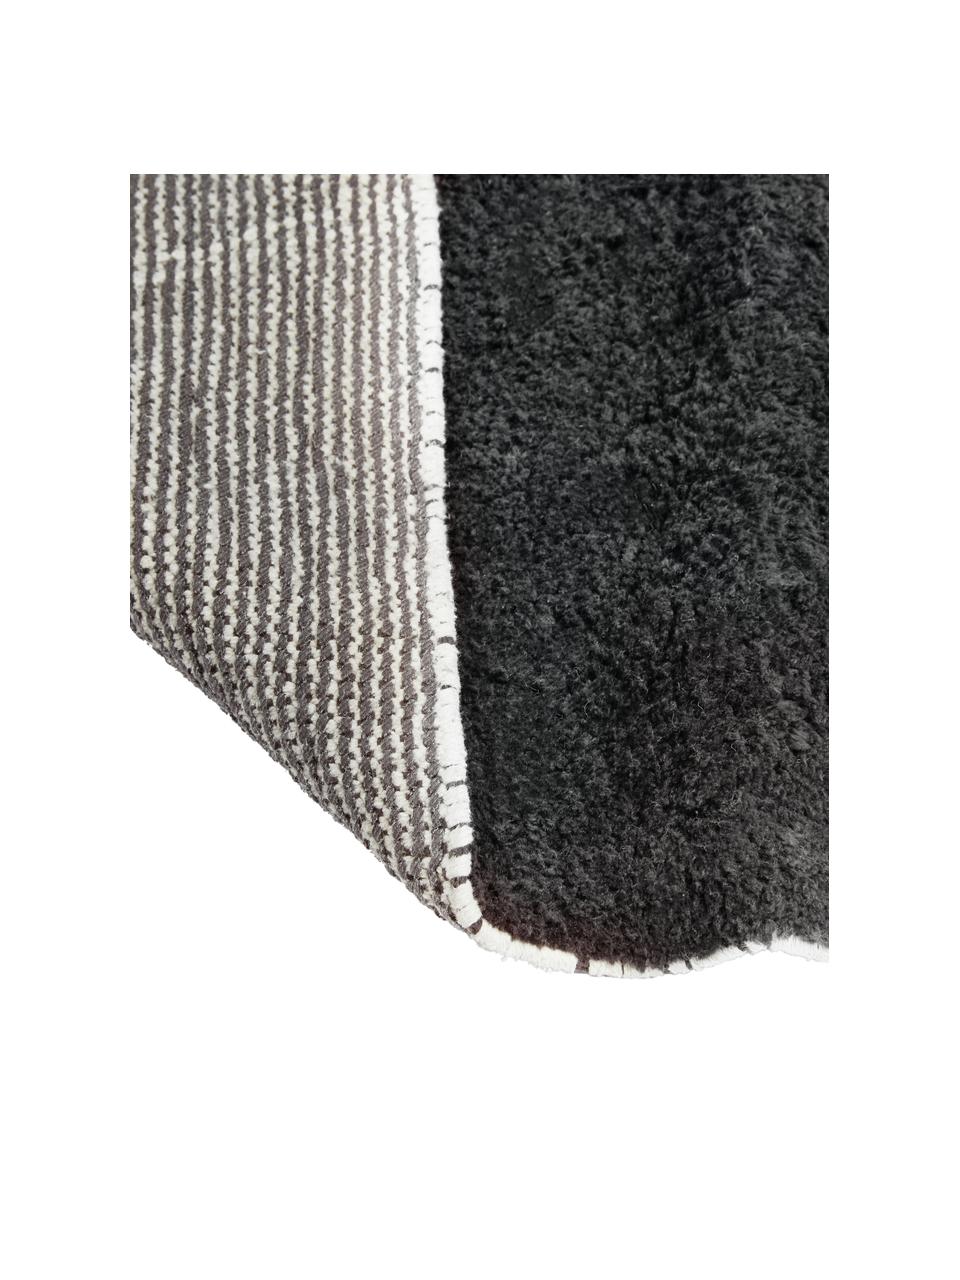 Tappeto in cotone taftato a mano con motivo zigzag e frange Asisa, Antracite, Larg. 200 x Lung. 300 cm (taglia L)